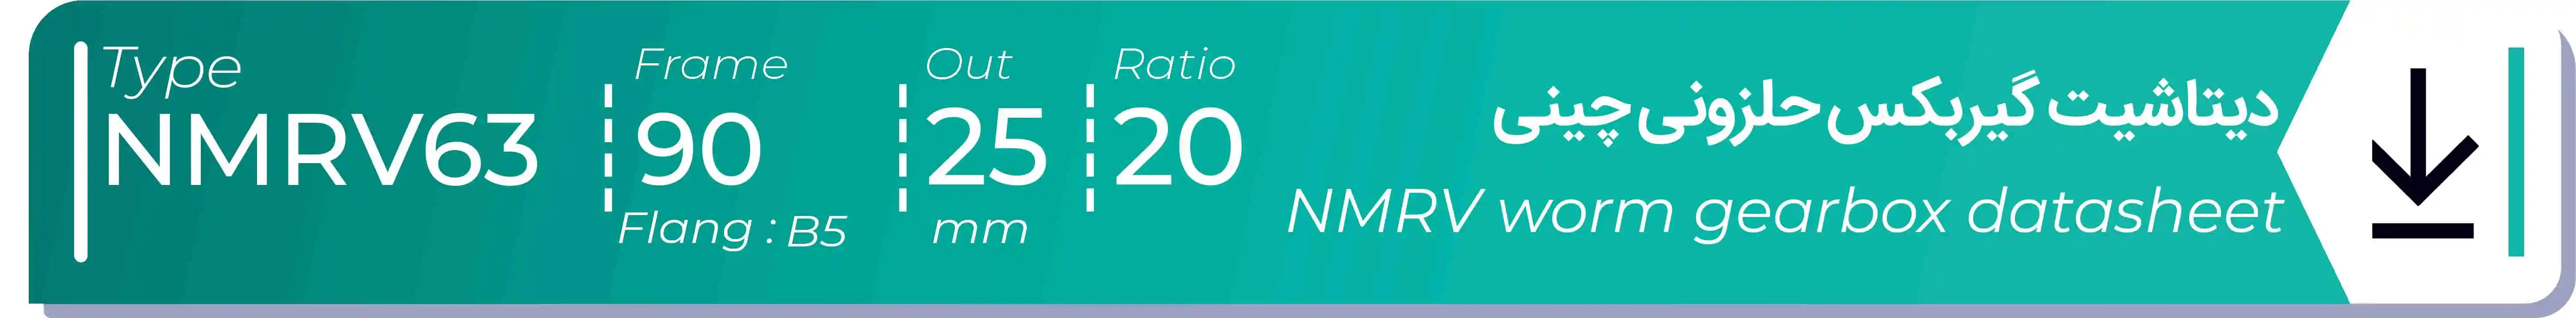  دیتاشیت و مشخصات فنی گیربکس حلزونی چینی   NMRV63  -  با خروجی 25- میلی متر و نسبت20 و فریم 90